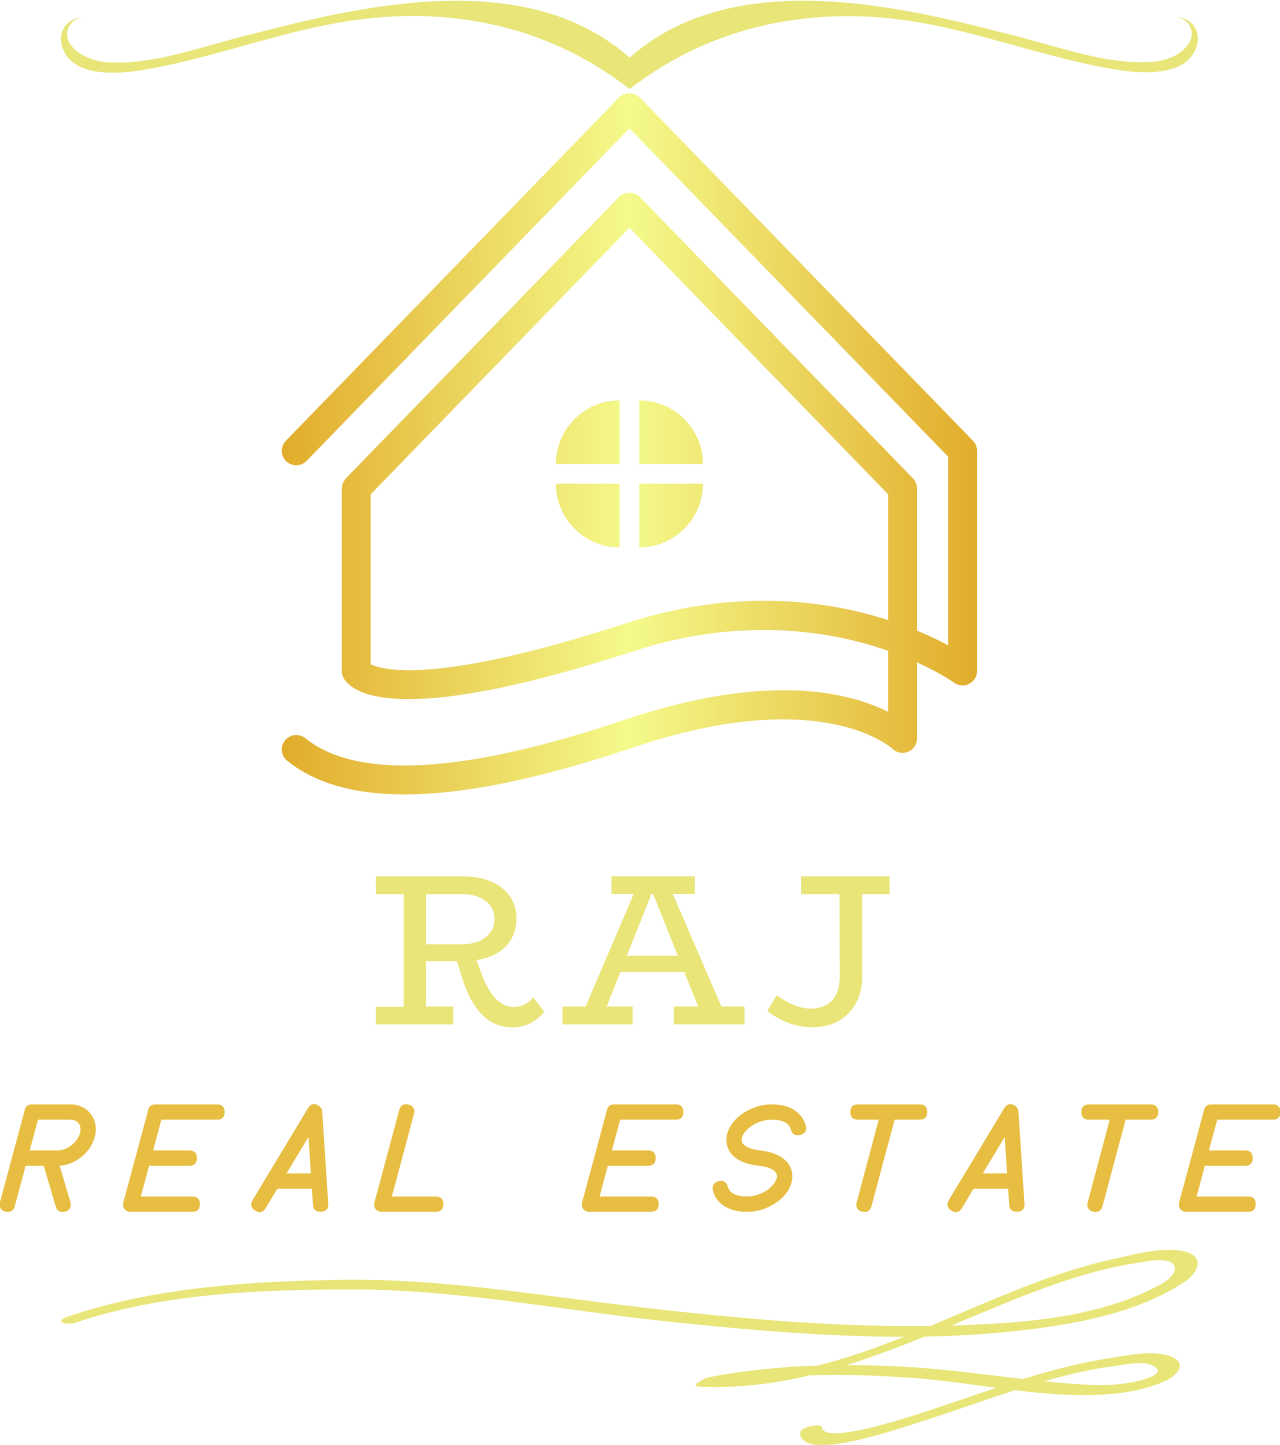 RAJ's logo